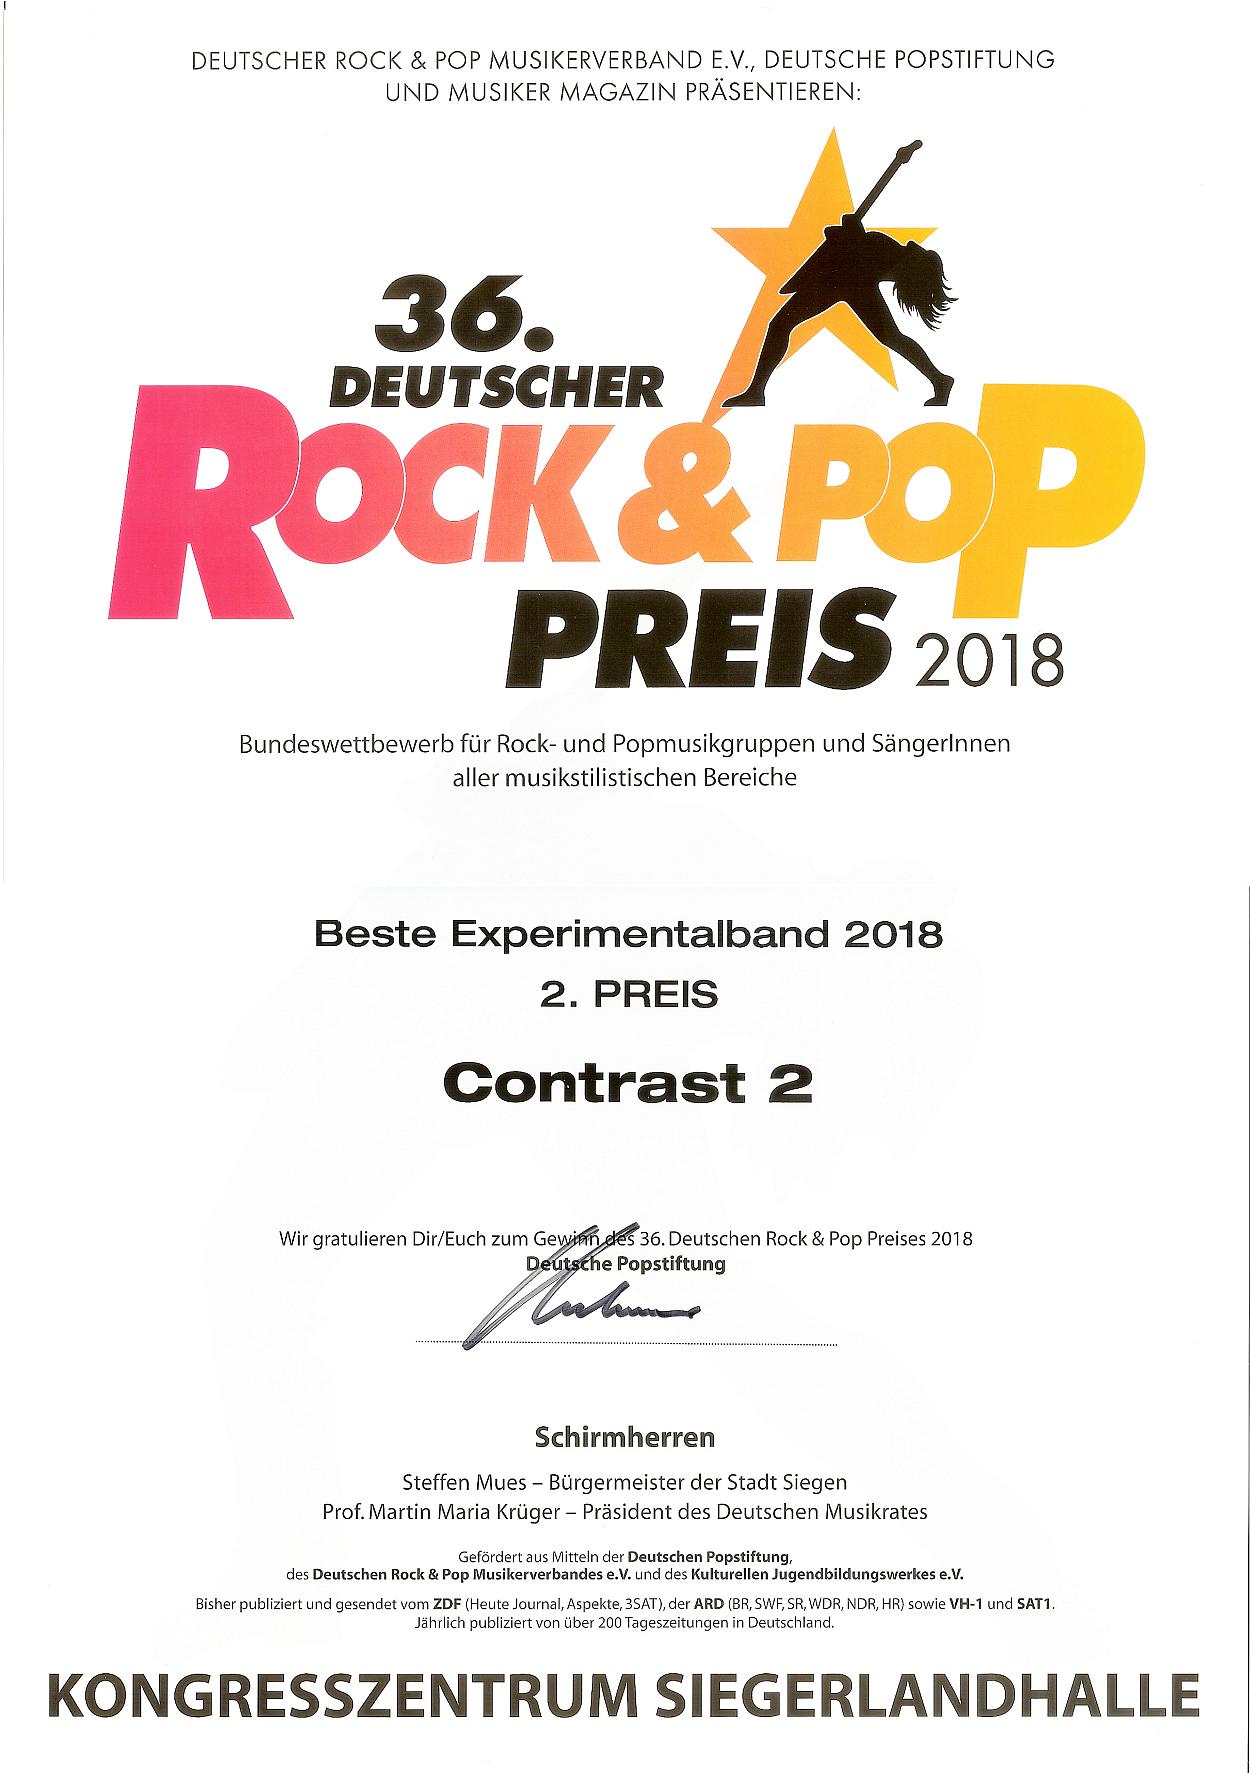 Urkunde vom Deutschen Rock & Pop Preis 2018 für den 2. Preis in der Kategorie 'Beste Experimentalband 2018' für meine Band Contrast2.